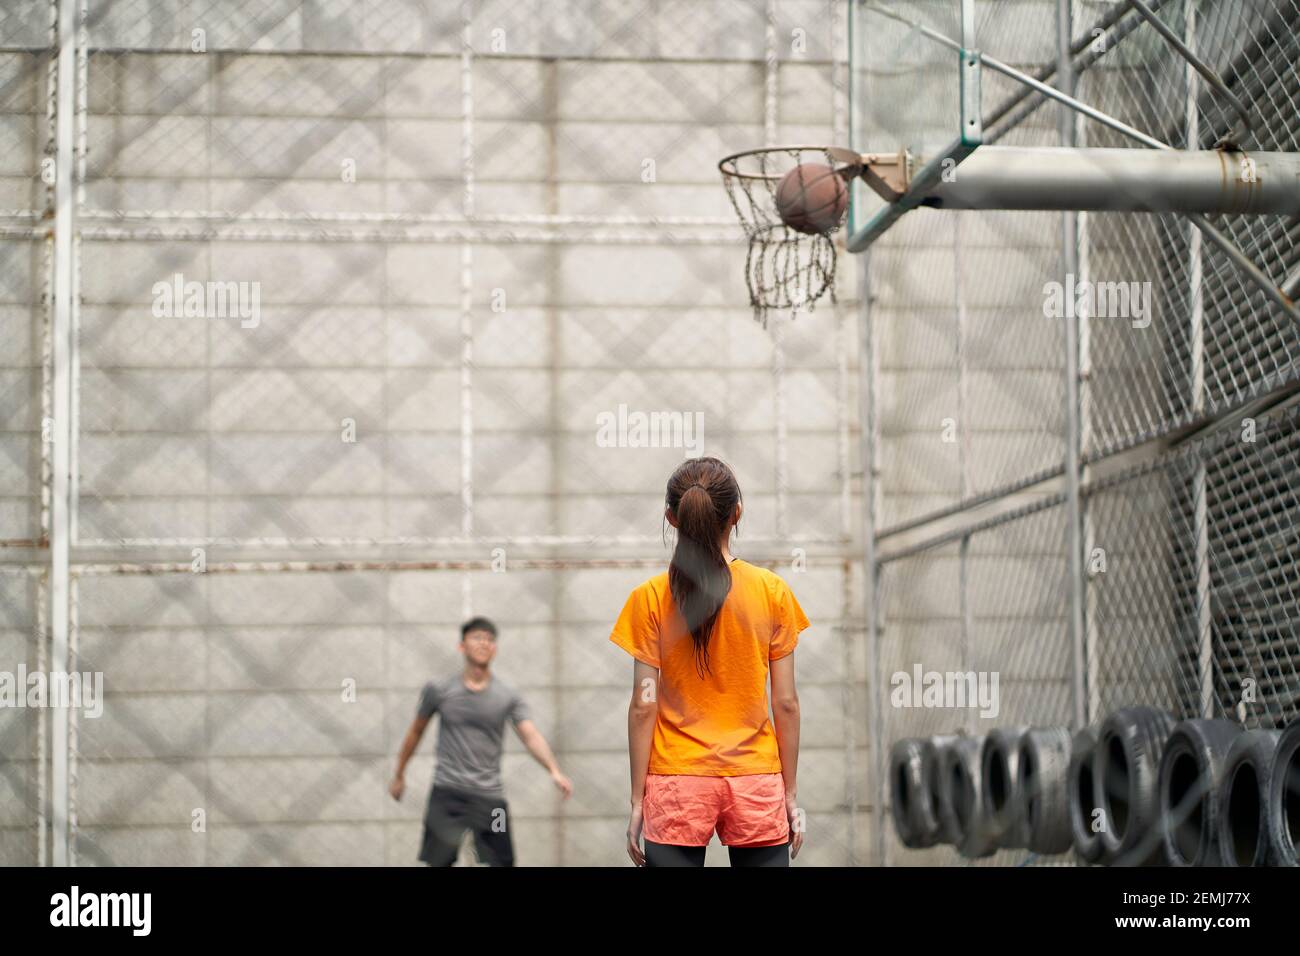 un jeune homme et une femme asiatiques jouant au basket-ball sur un terrain en plein air Banque D'Images